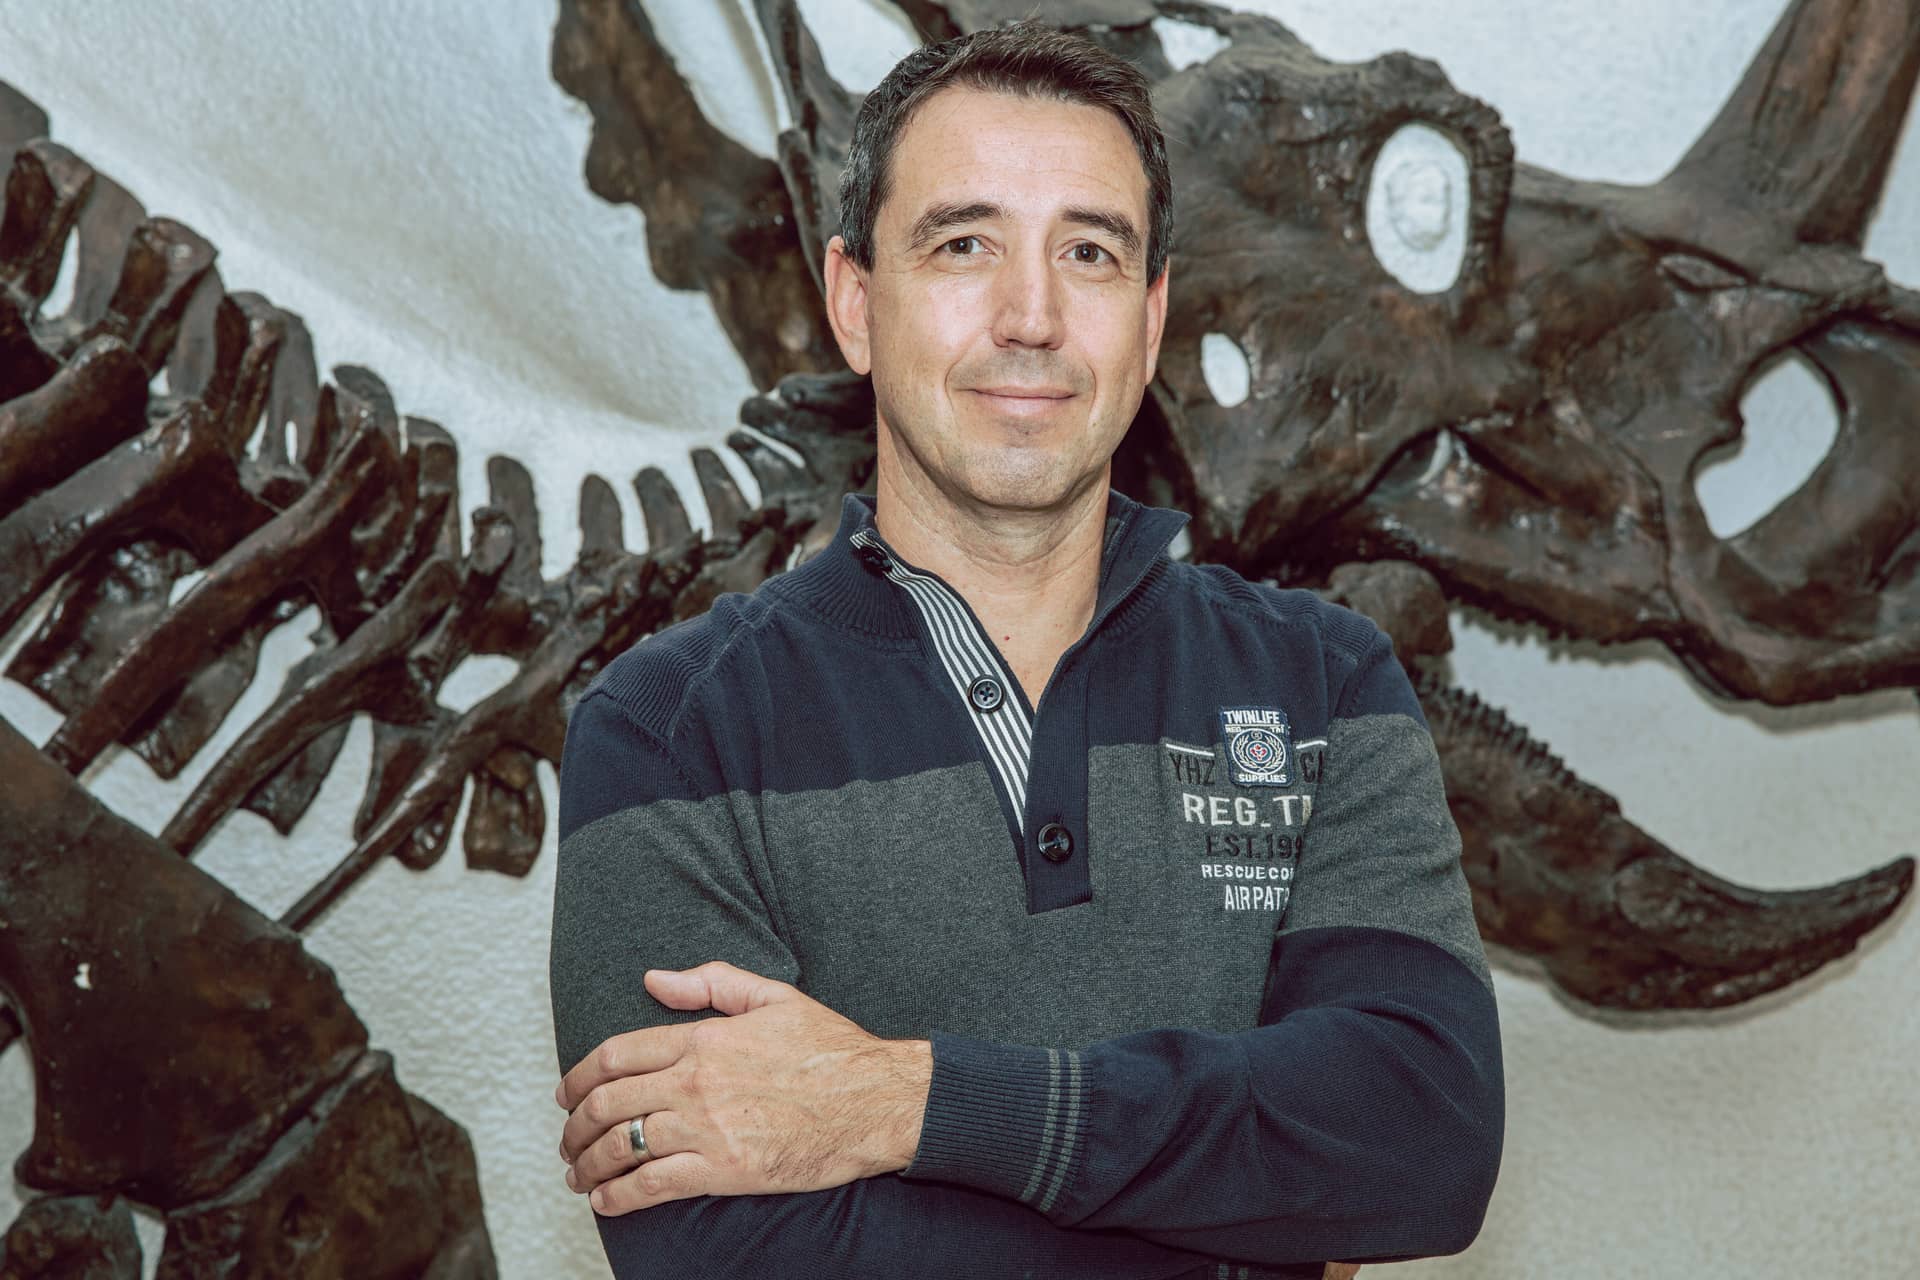 Porträt von Uwe Laub vor Dinosaurierskelett im Paläontologischen Museum München / Hintergrundinformationen zu LEBEN